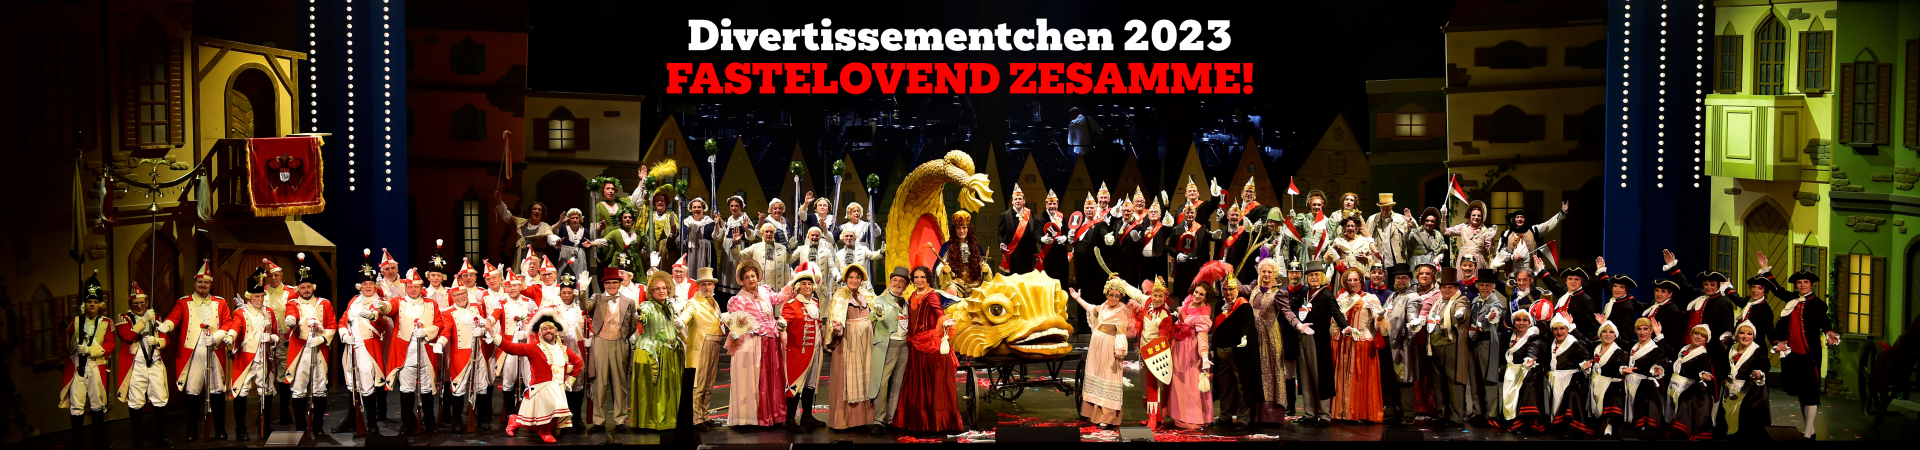 Fastelovend zesamme! - Divertissementchen 2023 - Gruppenfoto aller Sänger und Tänzer im Bühnenbild